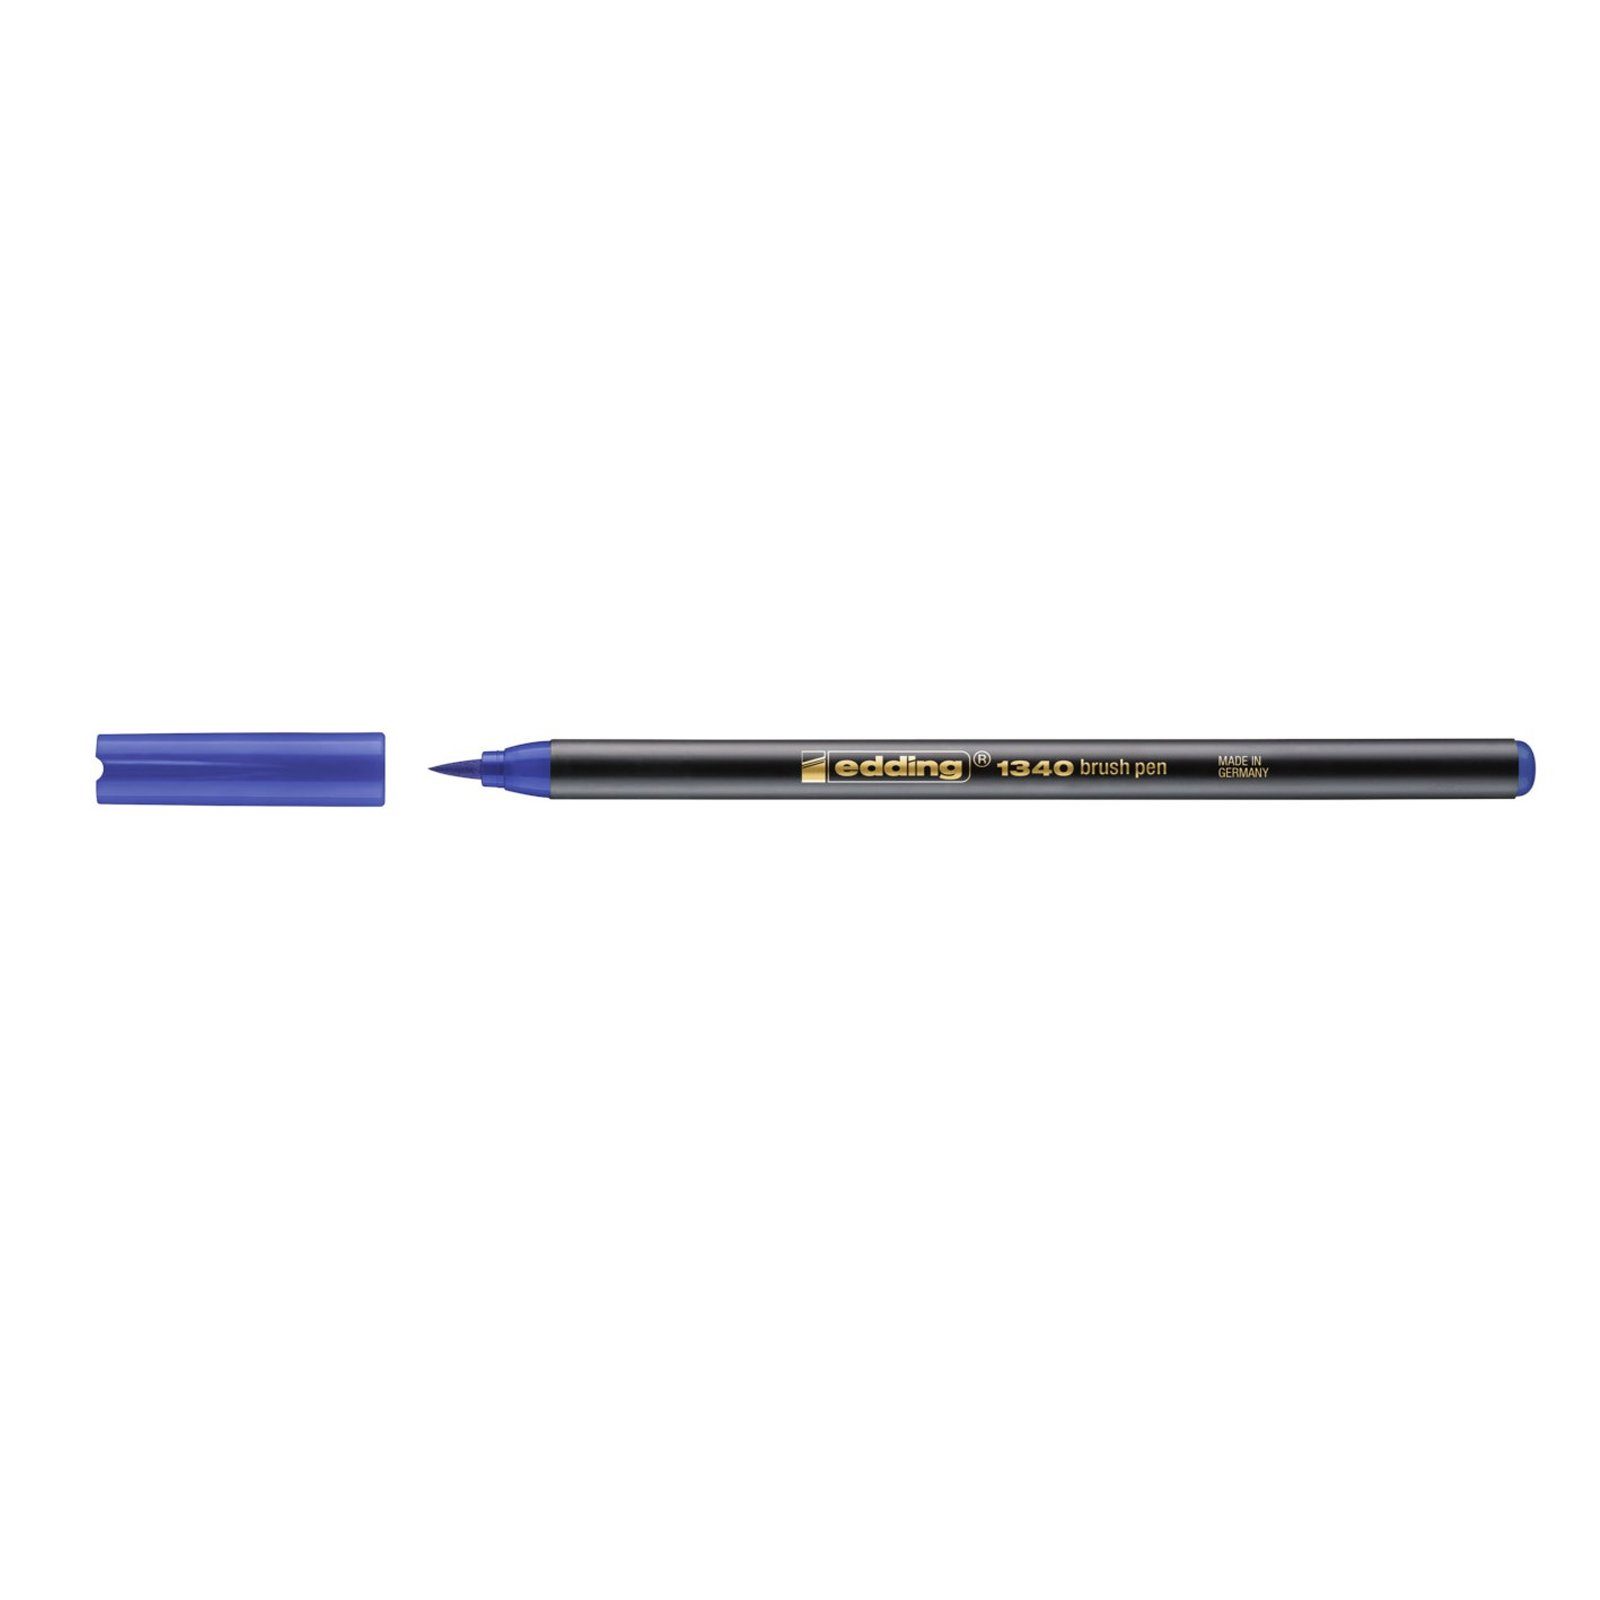 edding Pinselstift Pinselstift 1-3 mm edding 1340, (Stück) Blau